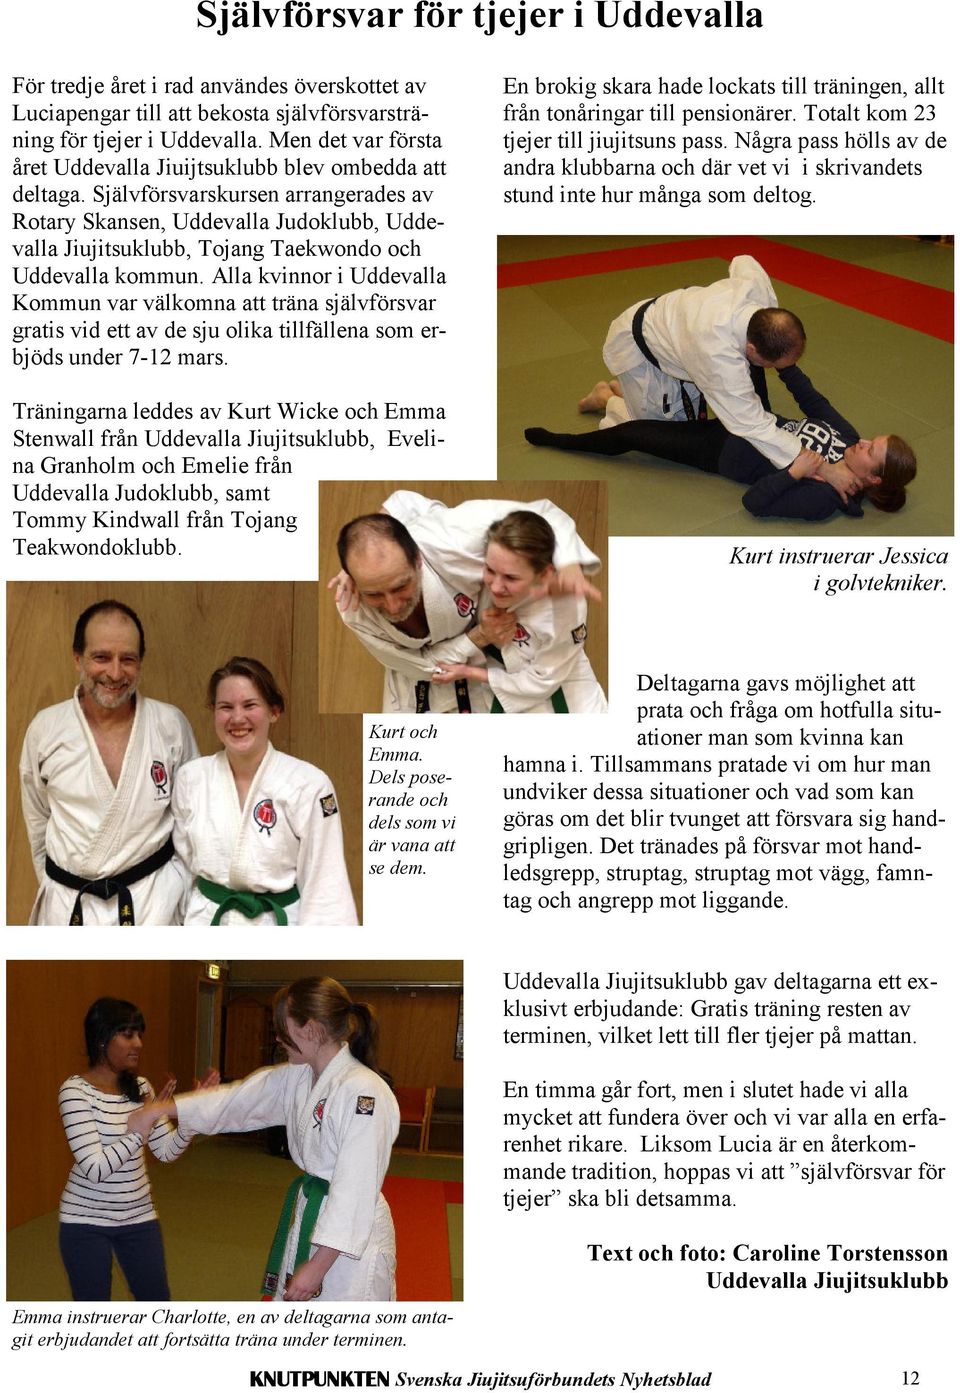 Självförsvarskursen arrangerades av Rotary Skansen, Uddevalla Judoklubb, Uddevalla Jiujitsuklubb, Tojang Taekwondo och Uddevalla kommun.